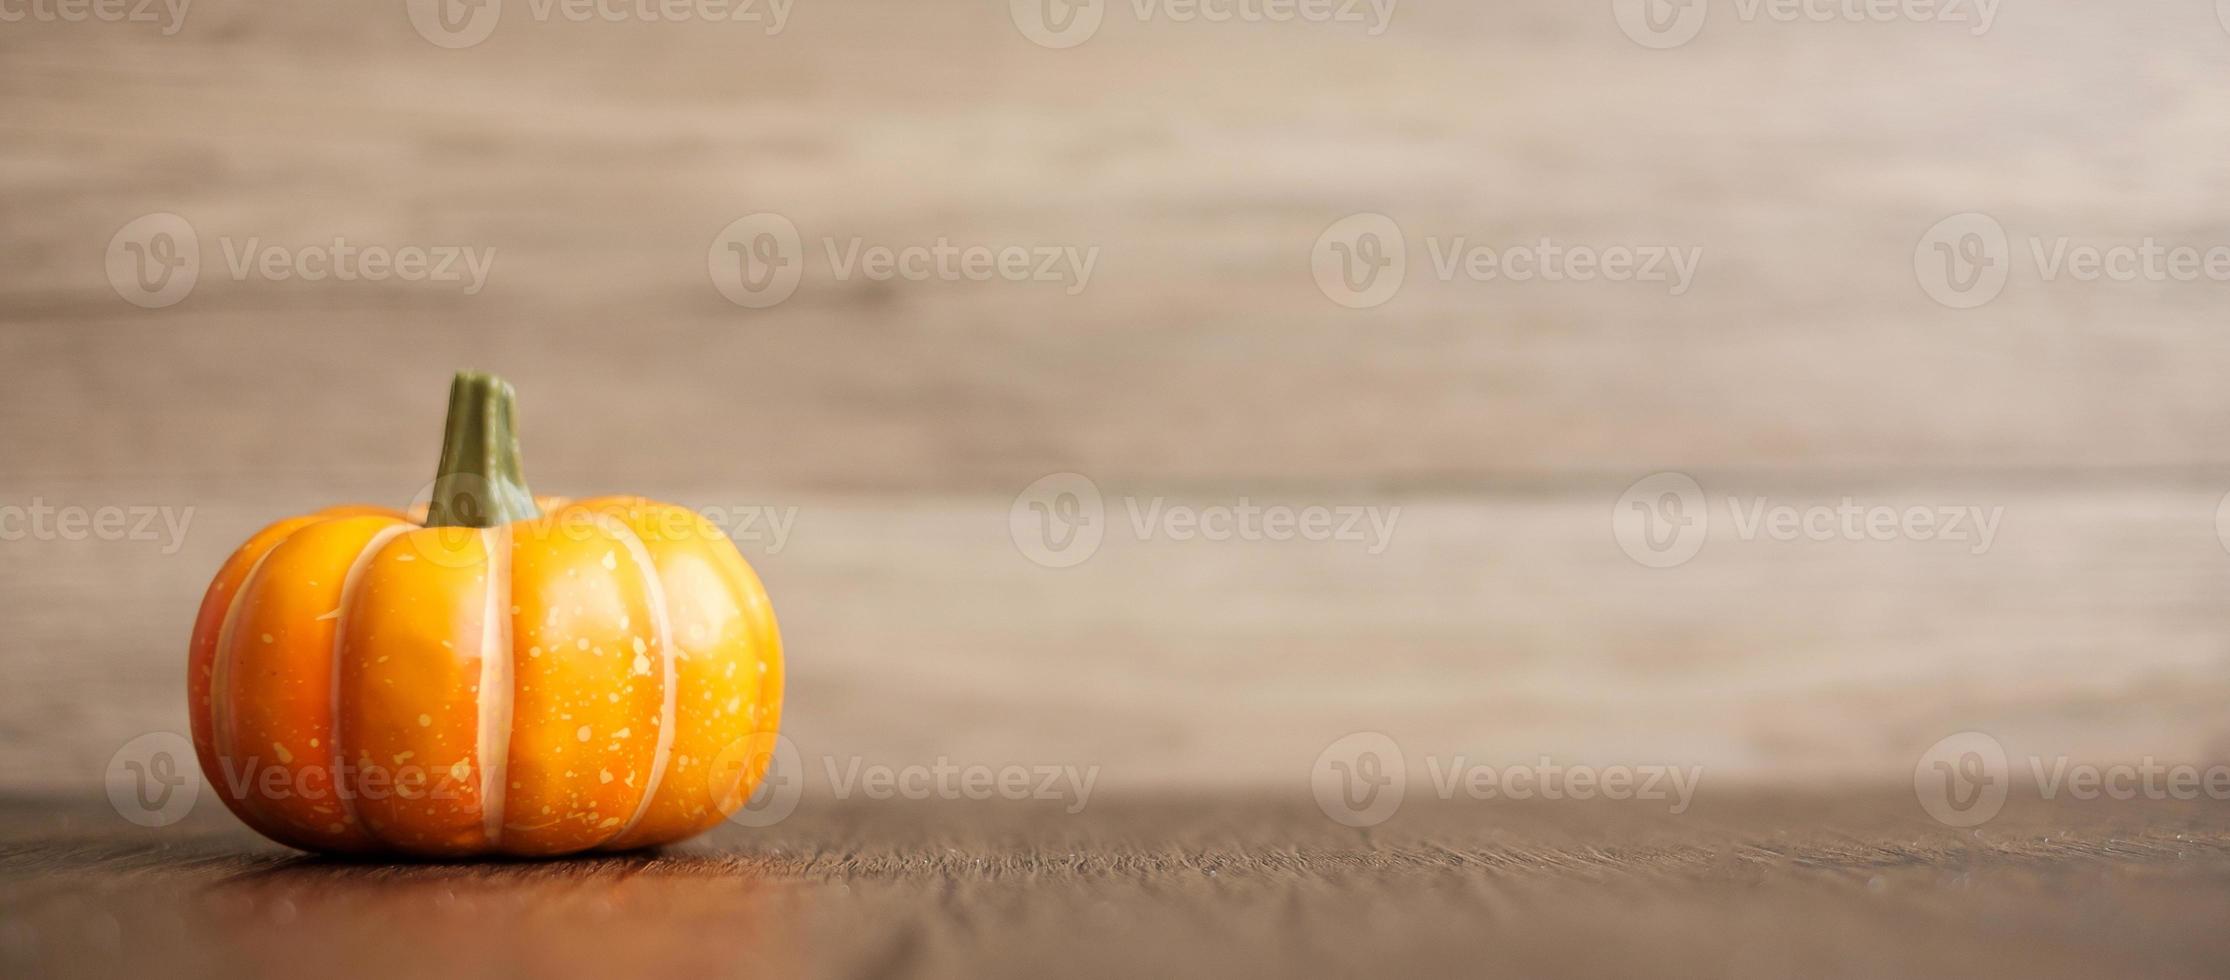 Orangefarbener Kürbis auf dem Tisch mit Kopienraum für Bannerhintergrund. fröhlicher halloween-tag, hallo oktober, herbstsaison, festliches, party- und urlaubskonzept foto